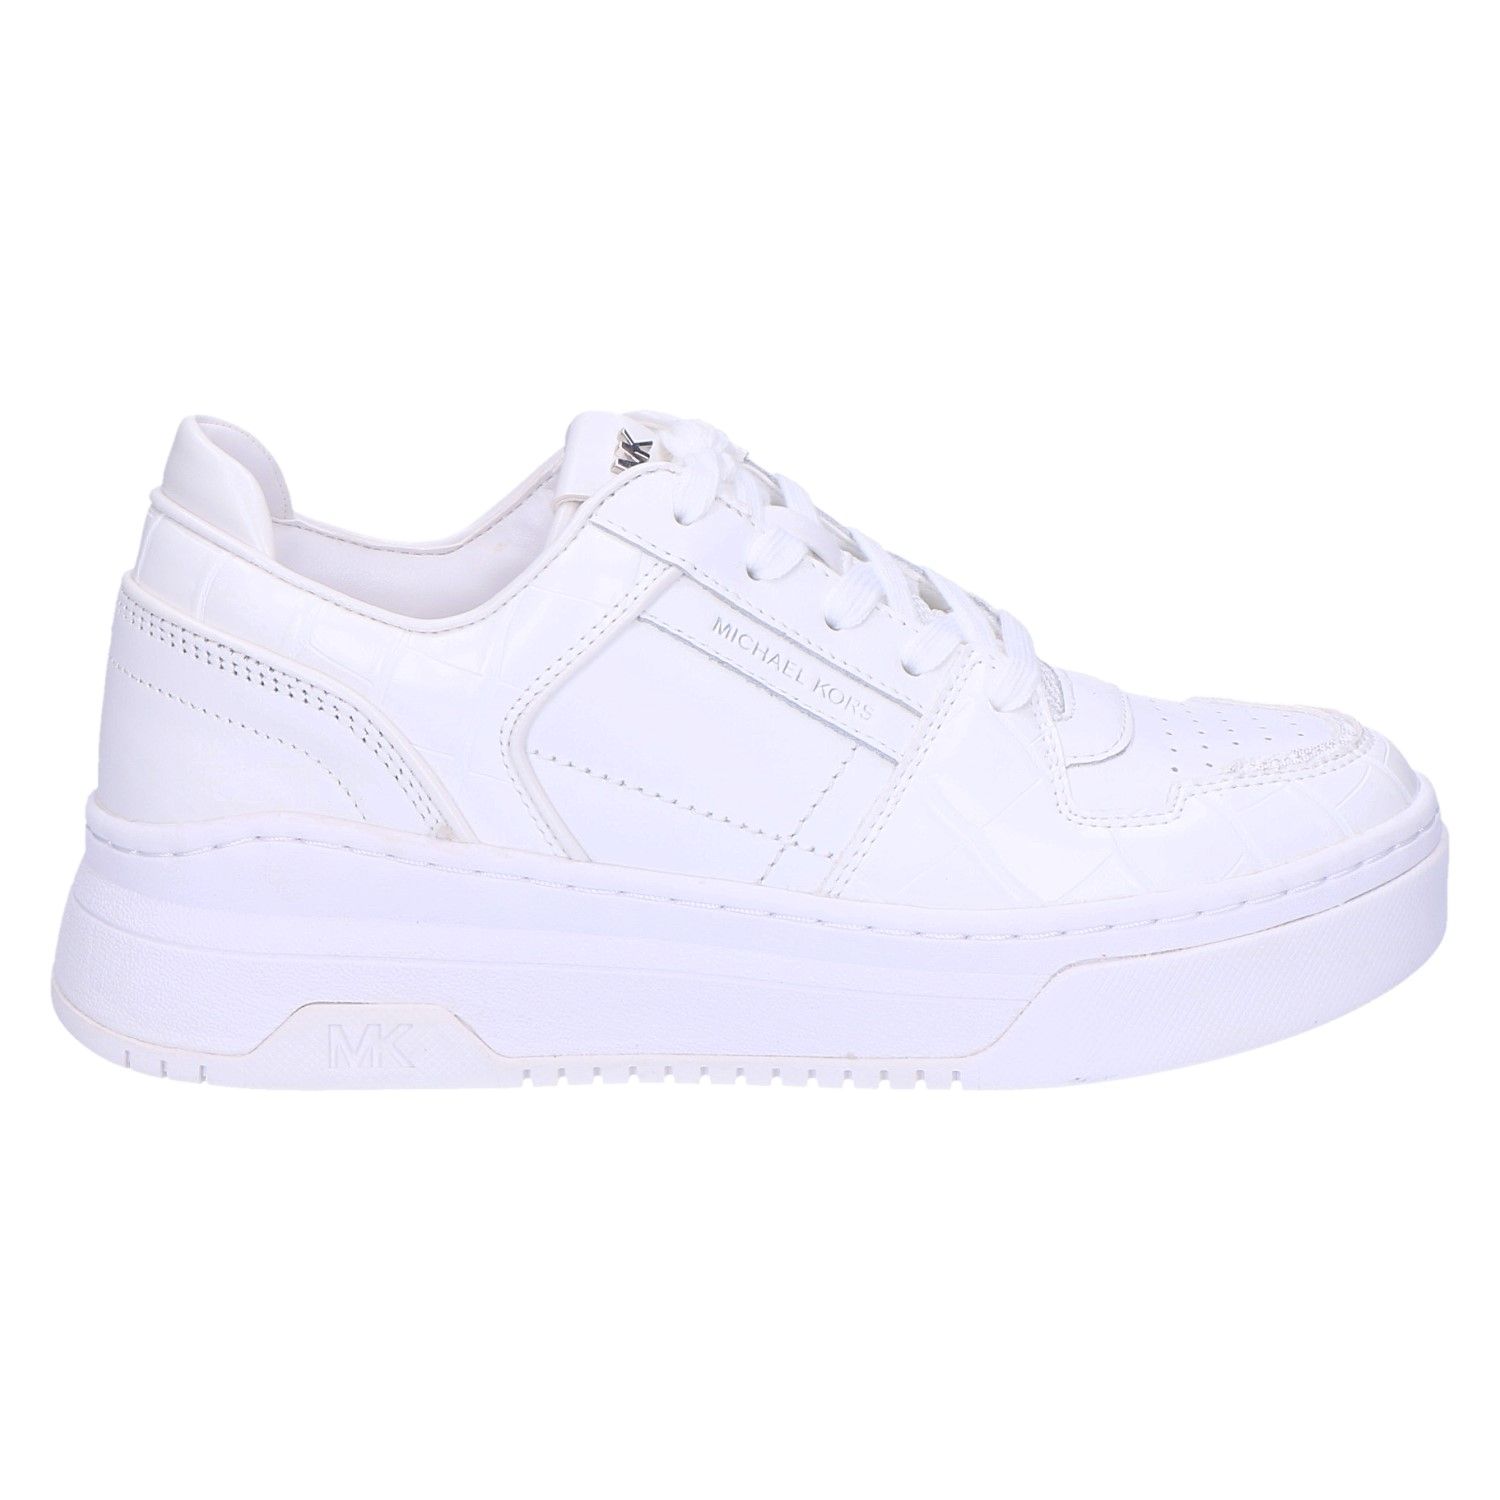 Bedrijf Succesvol Gastheer van Michael Kors Michael Kors Lexi Sneaker bright white met artikelnummer  43T1KXFS5L119 verkrijgbaar bij Beurskens schoenmode.